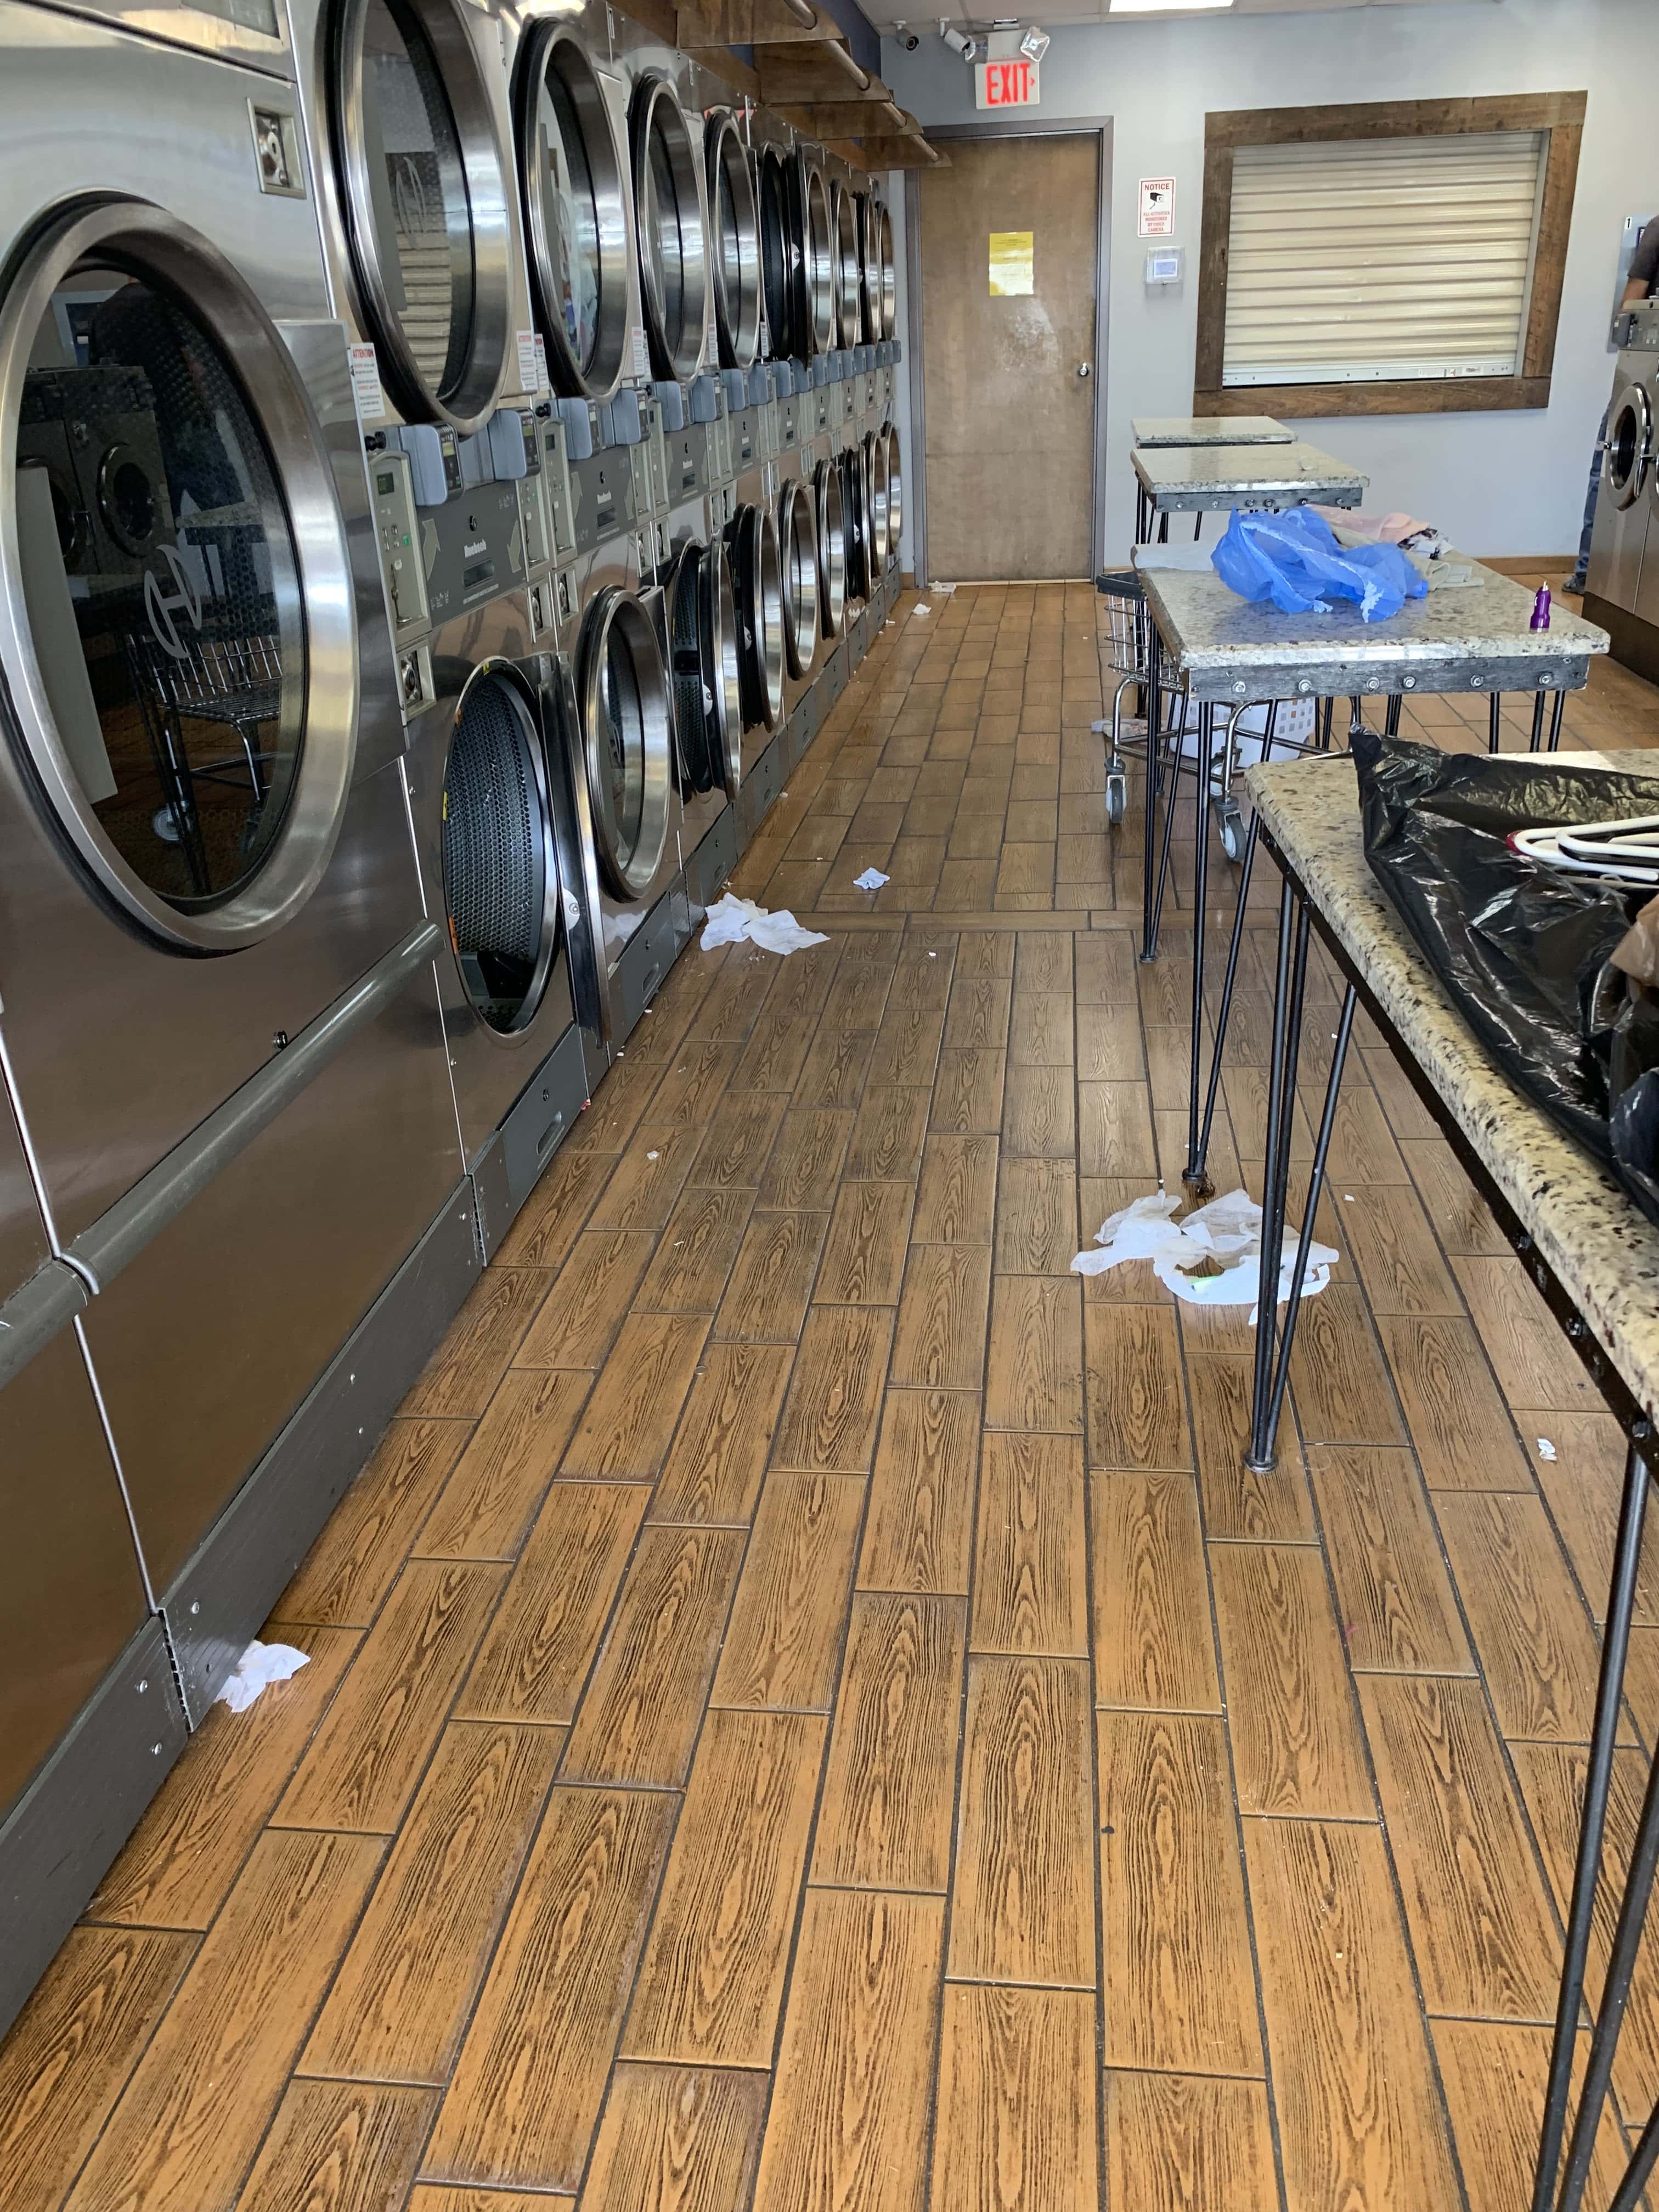 Spin City Laundry - Ocala (FL 34471), US, 24 hour laundry near me